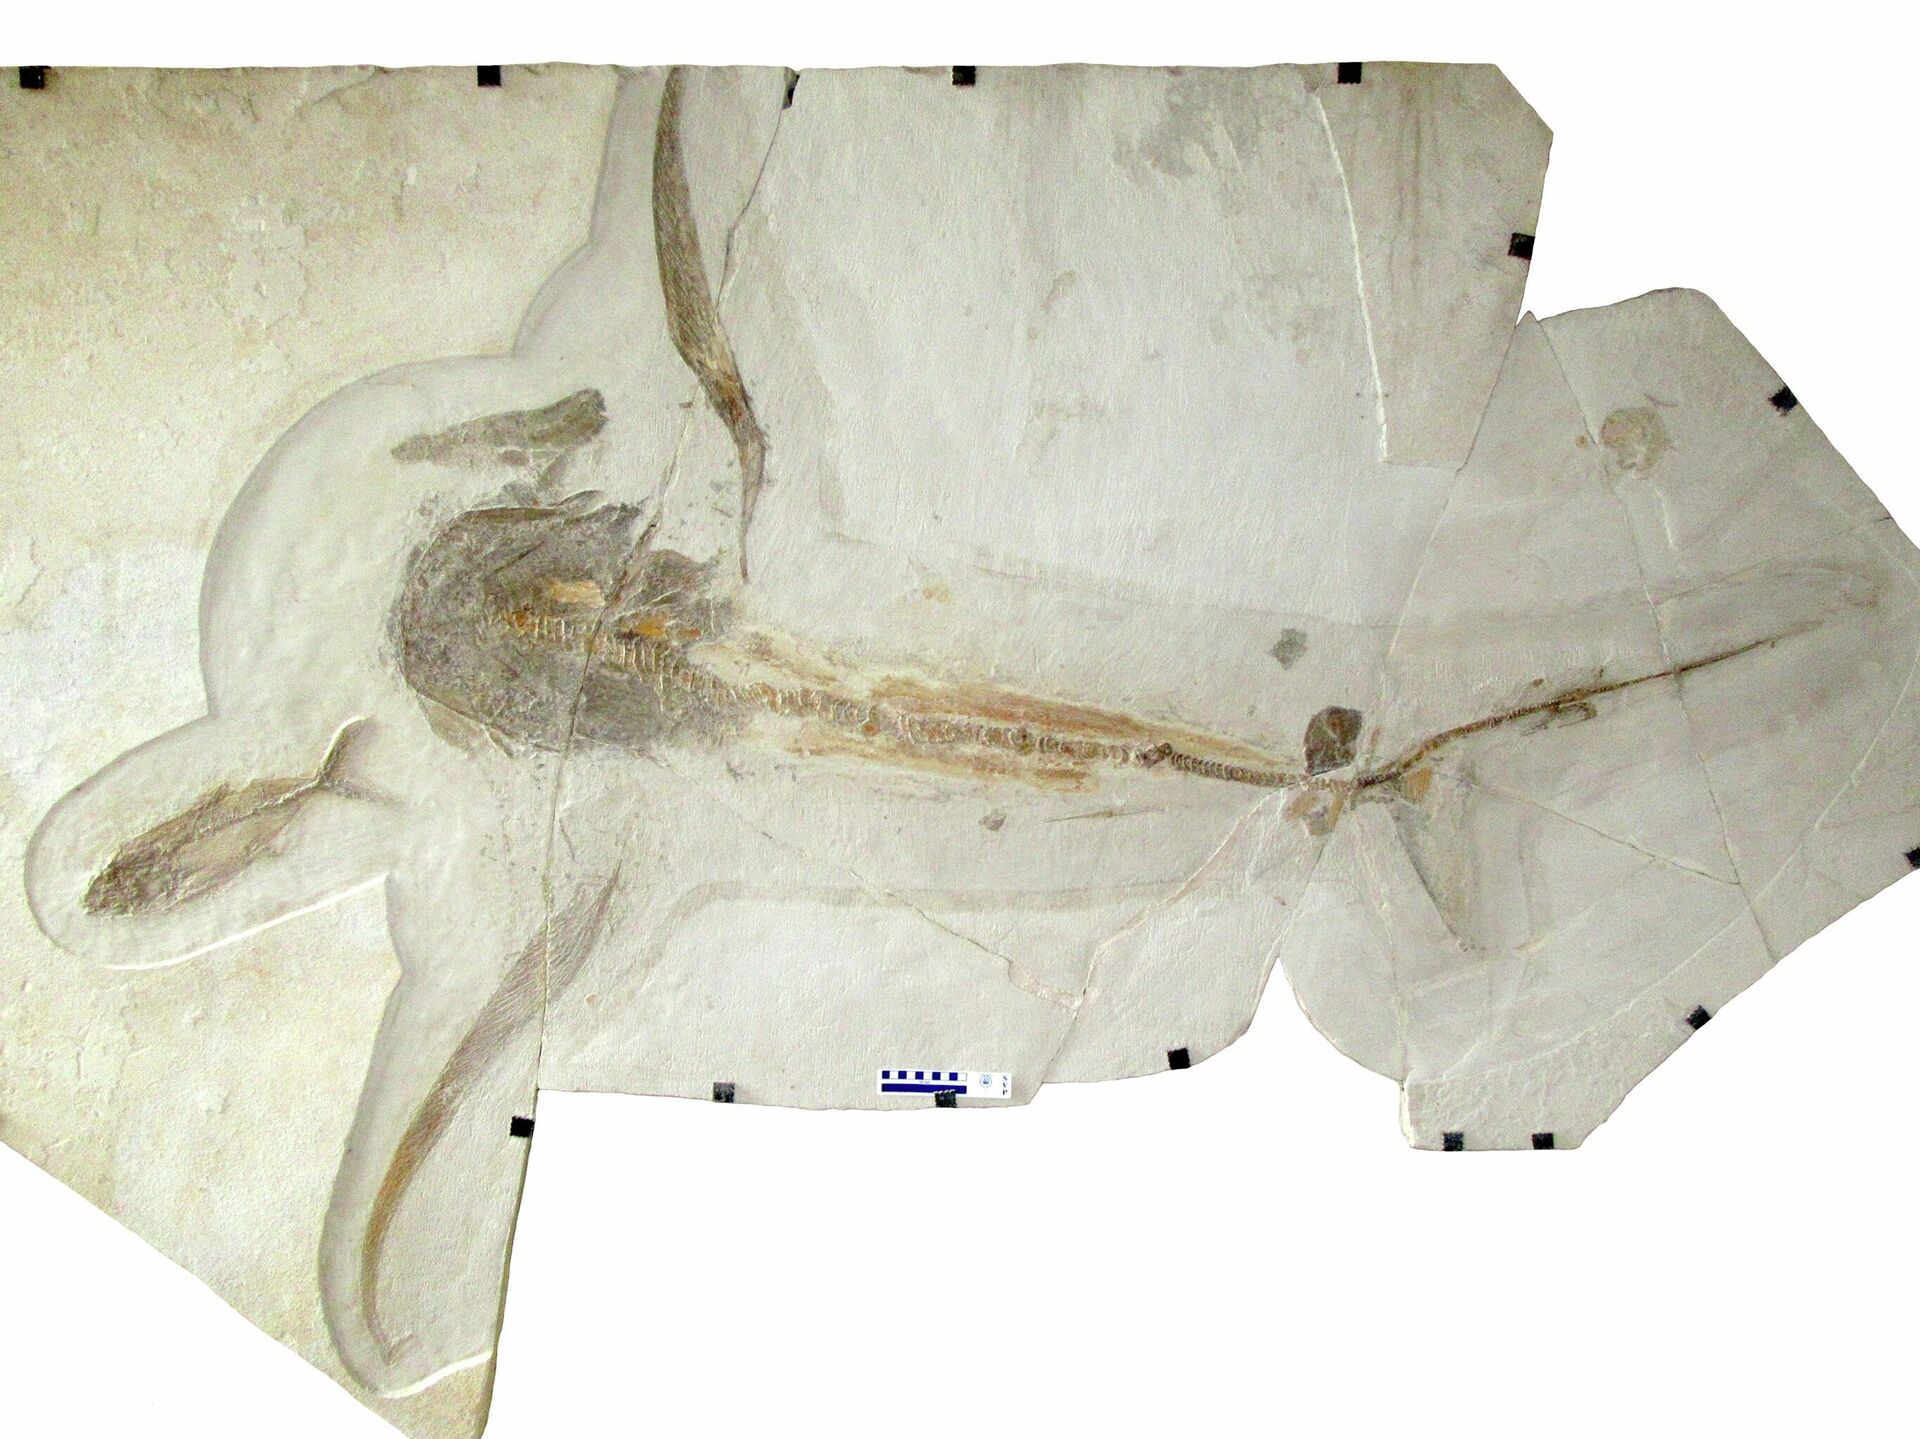 El fósil del inusual tiburón Aquilolamna milarcae que vivió durante el Cretácico - Sputnik Mundo, 1920, 19.03.2021